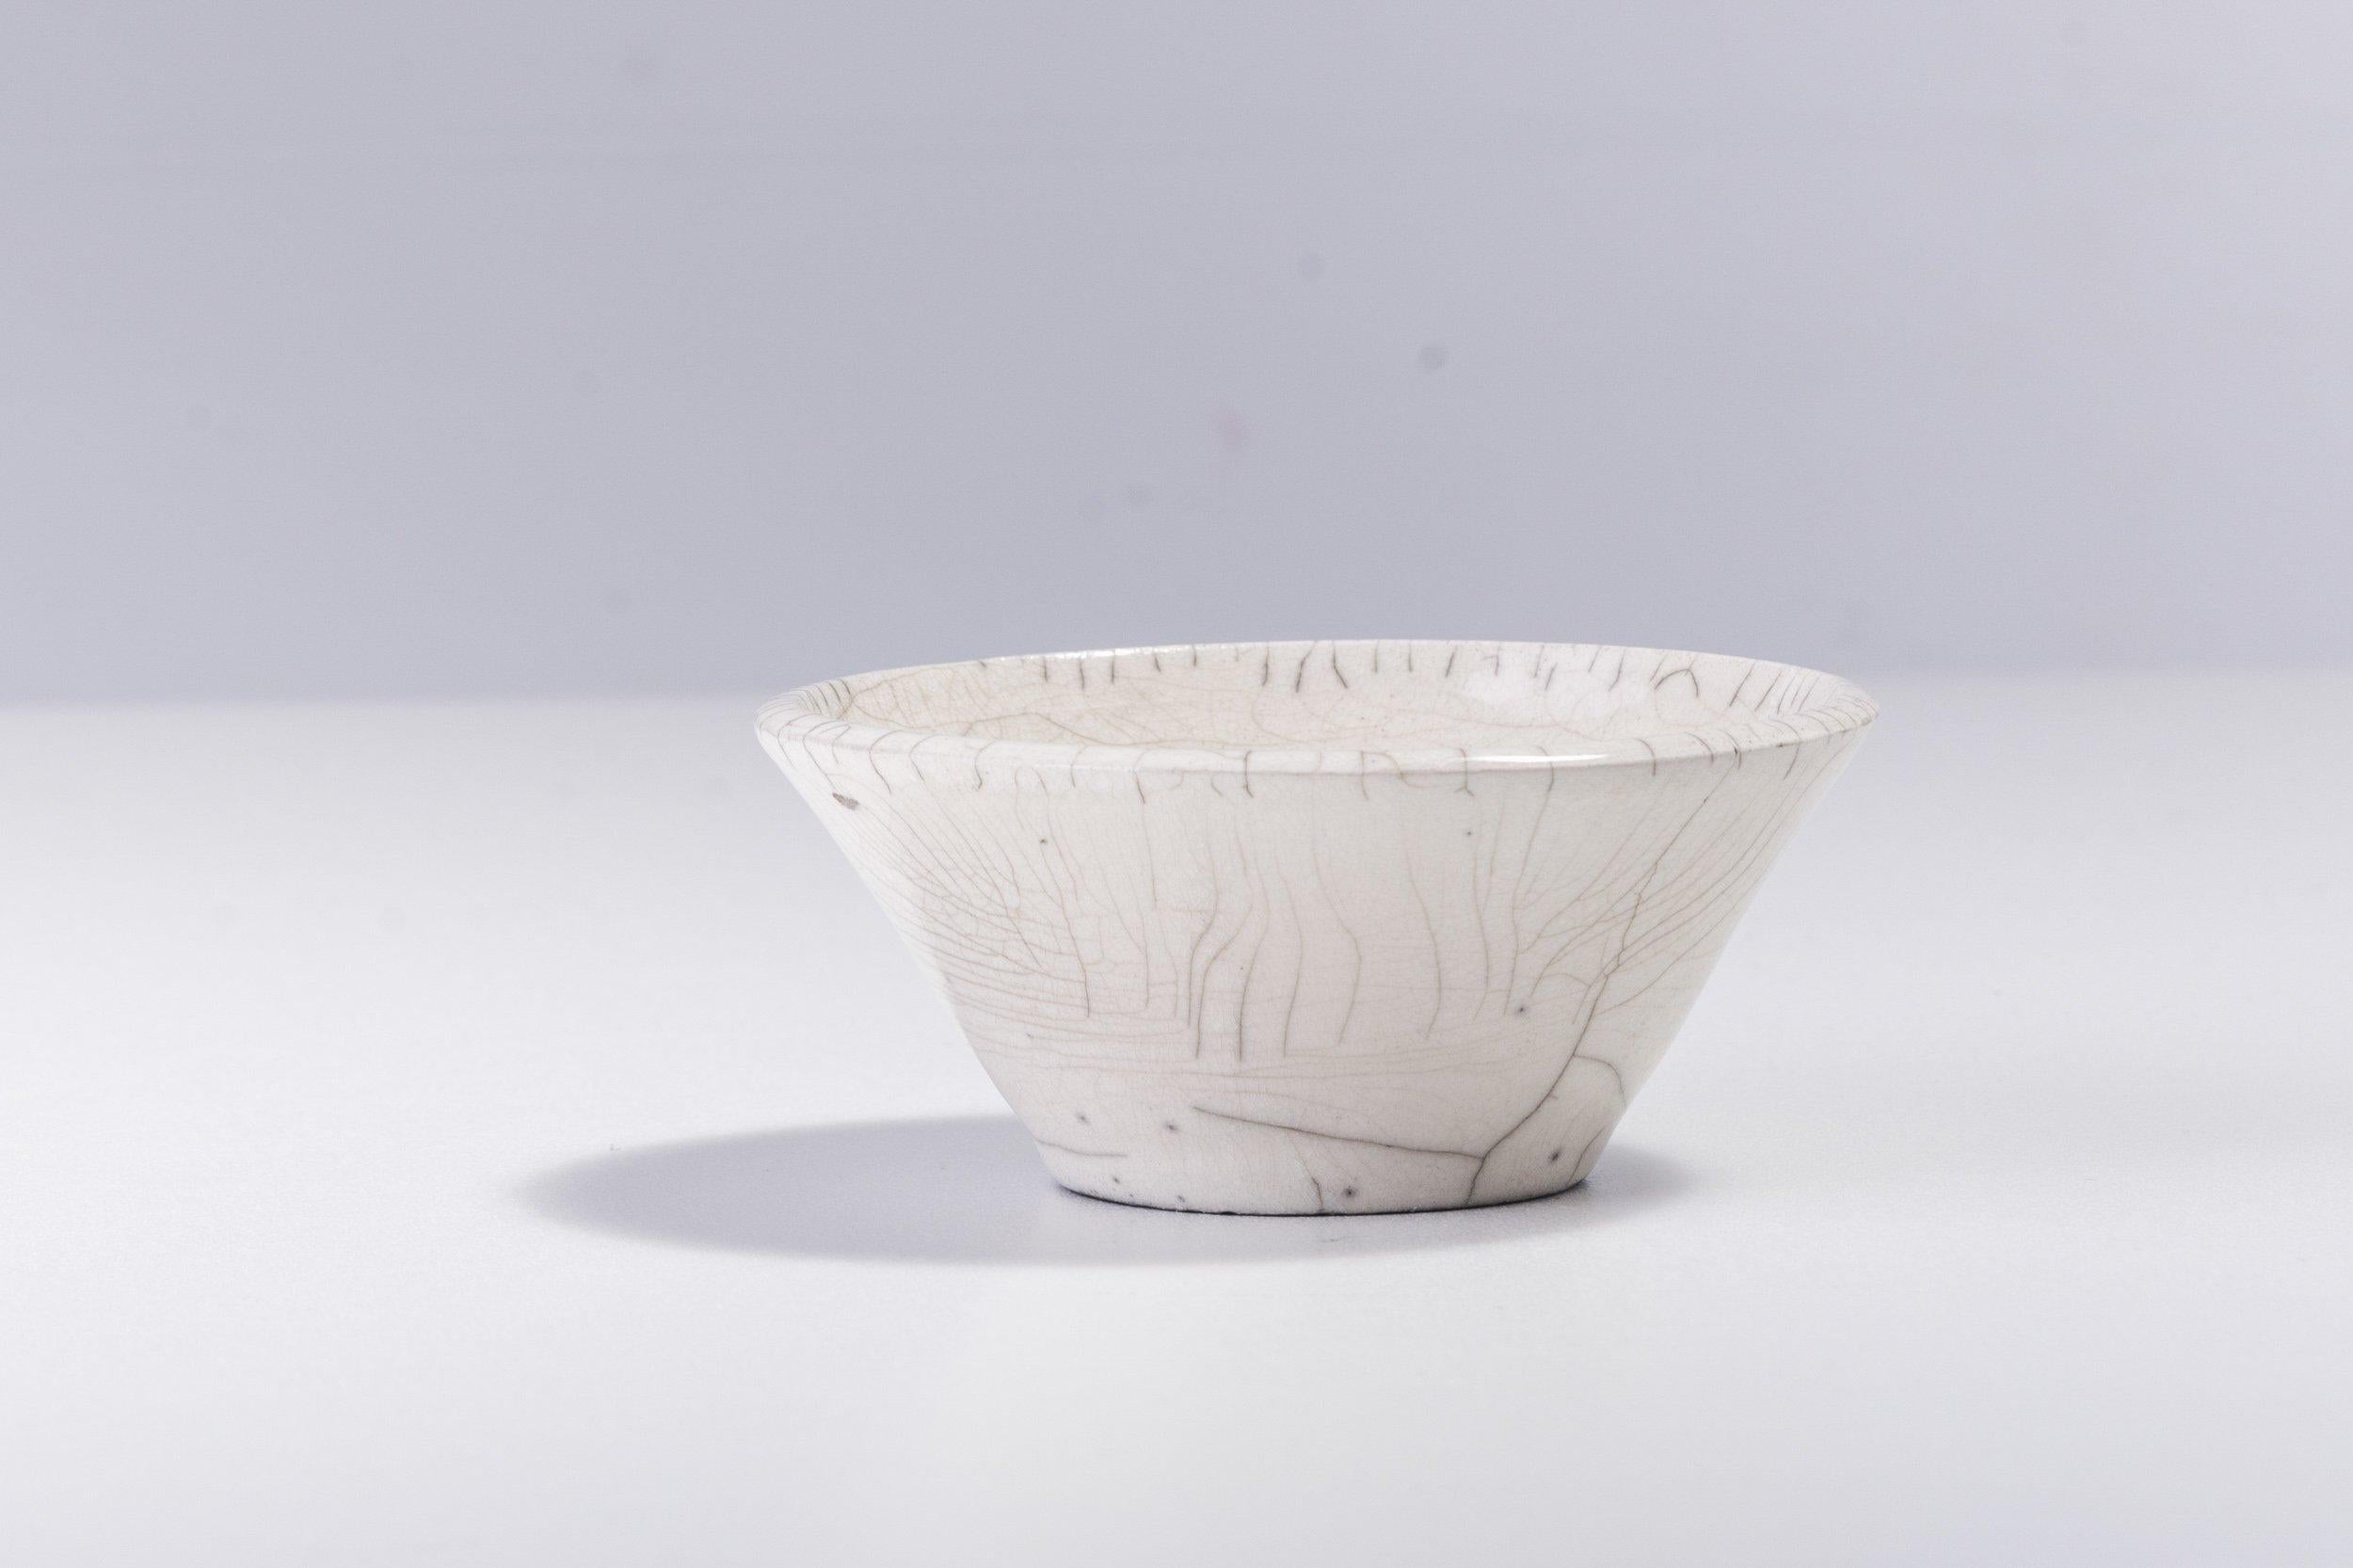 Design fonctionnel et technique sublime fusionnent dans ce bol spectaculaire, fabriqué à la main en céramique selon la technique japonaise de cuisson Raku nue. Cette pièce unique est ornée d'un patchwork sophistiqué de délicates fissures grises qui